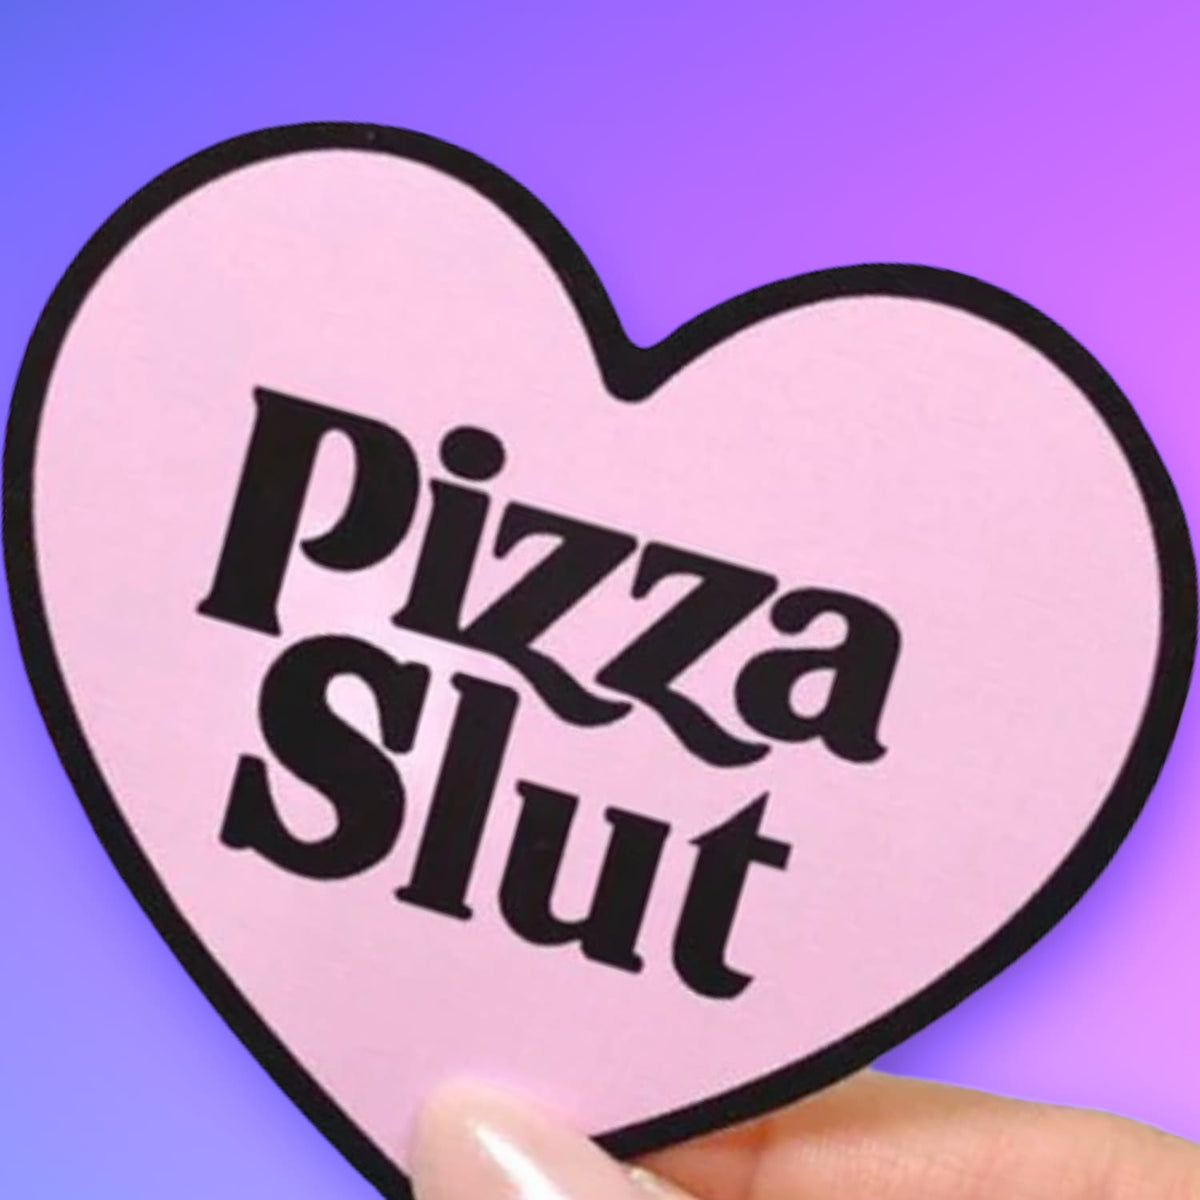 Pizza Slut Heart Sticker Decorative Sticker - Funny Gift -